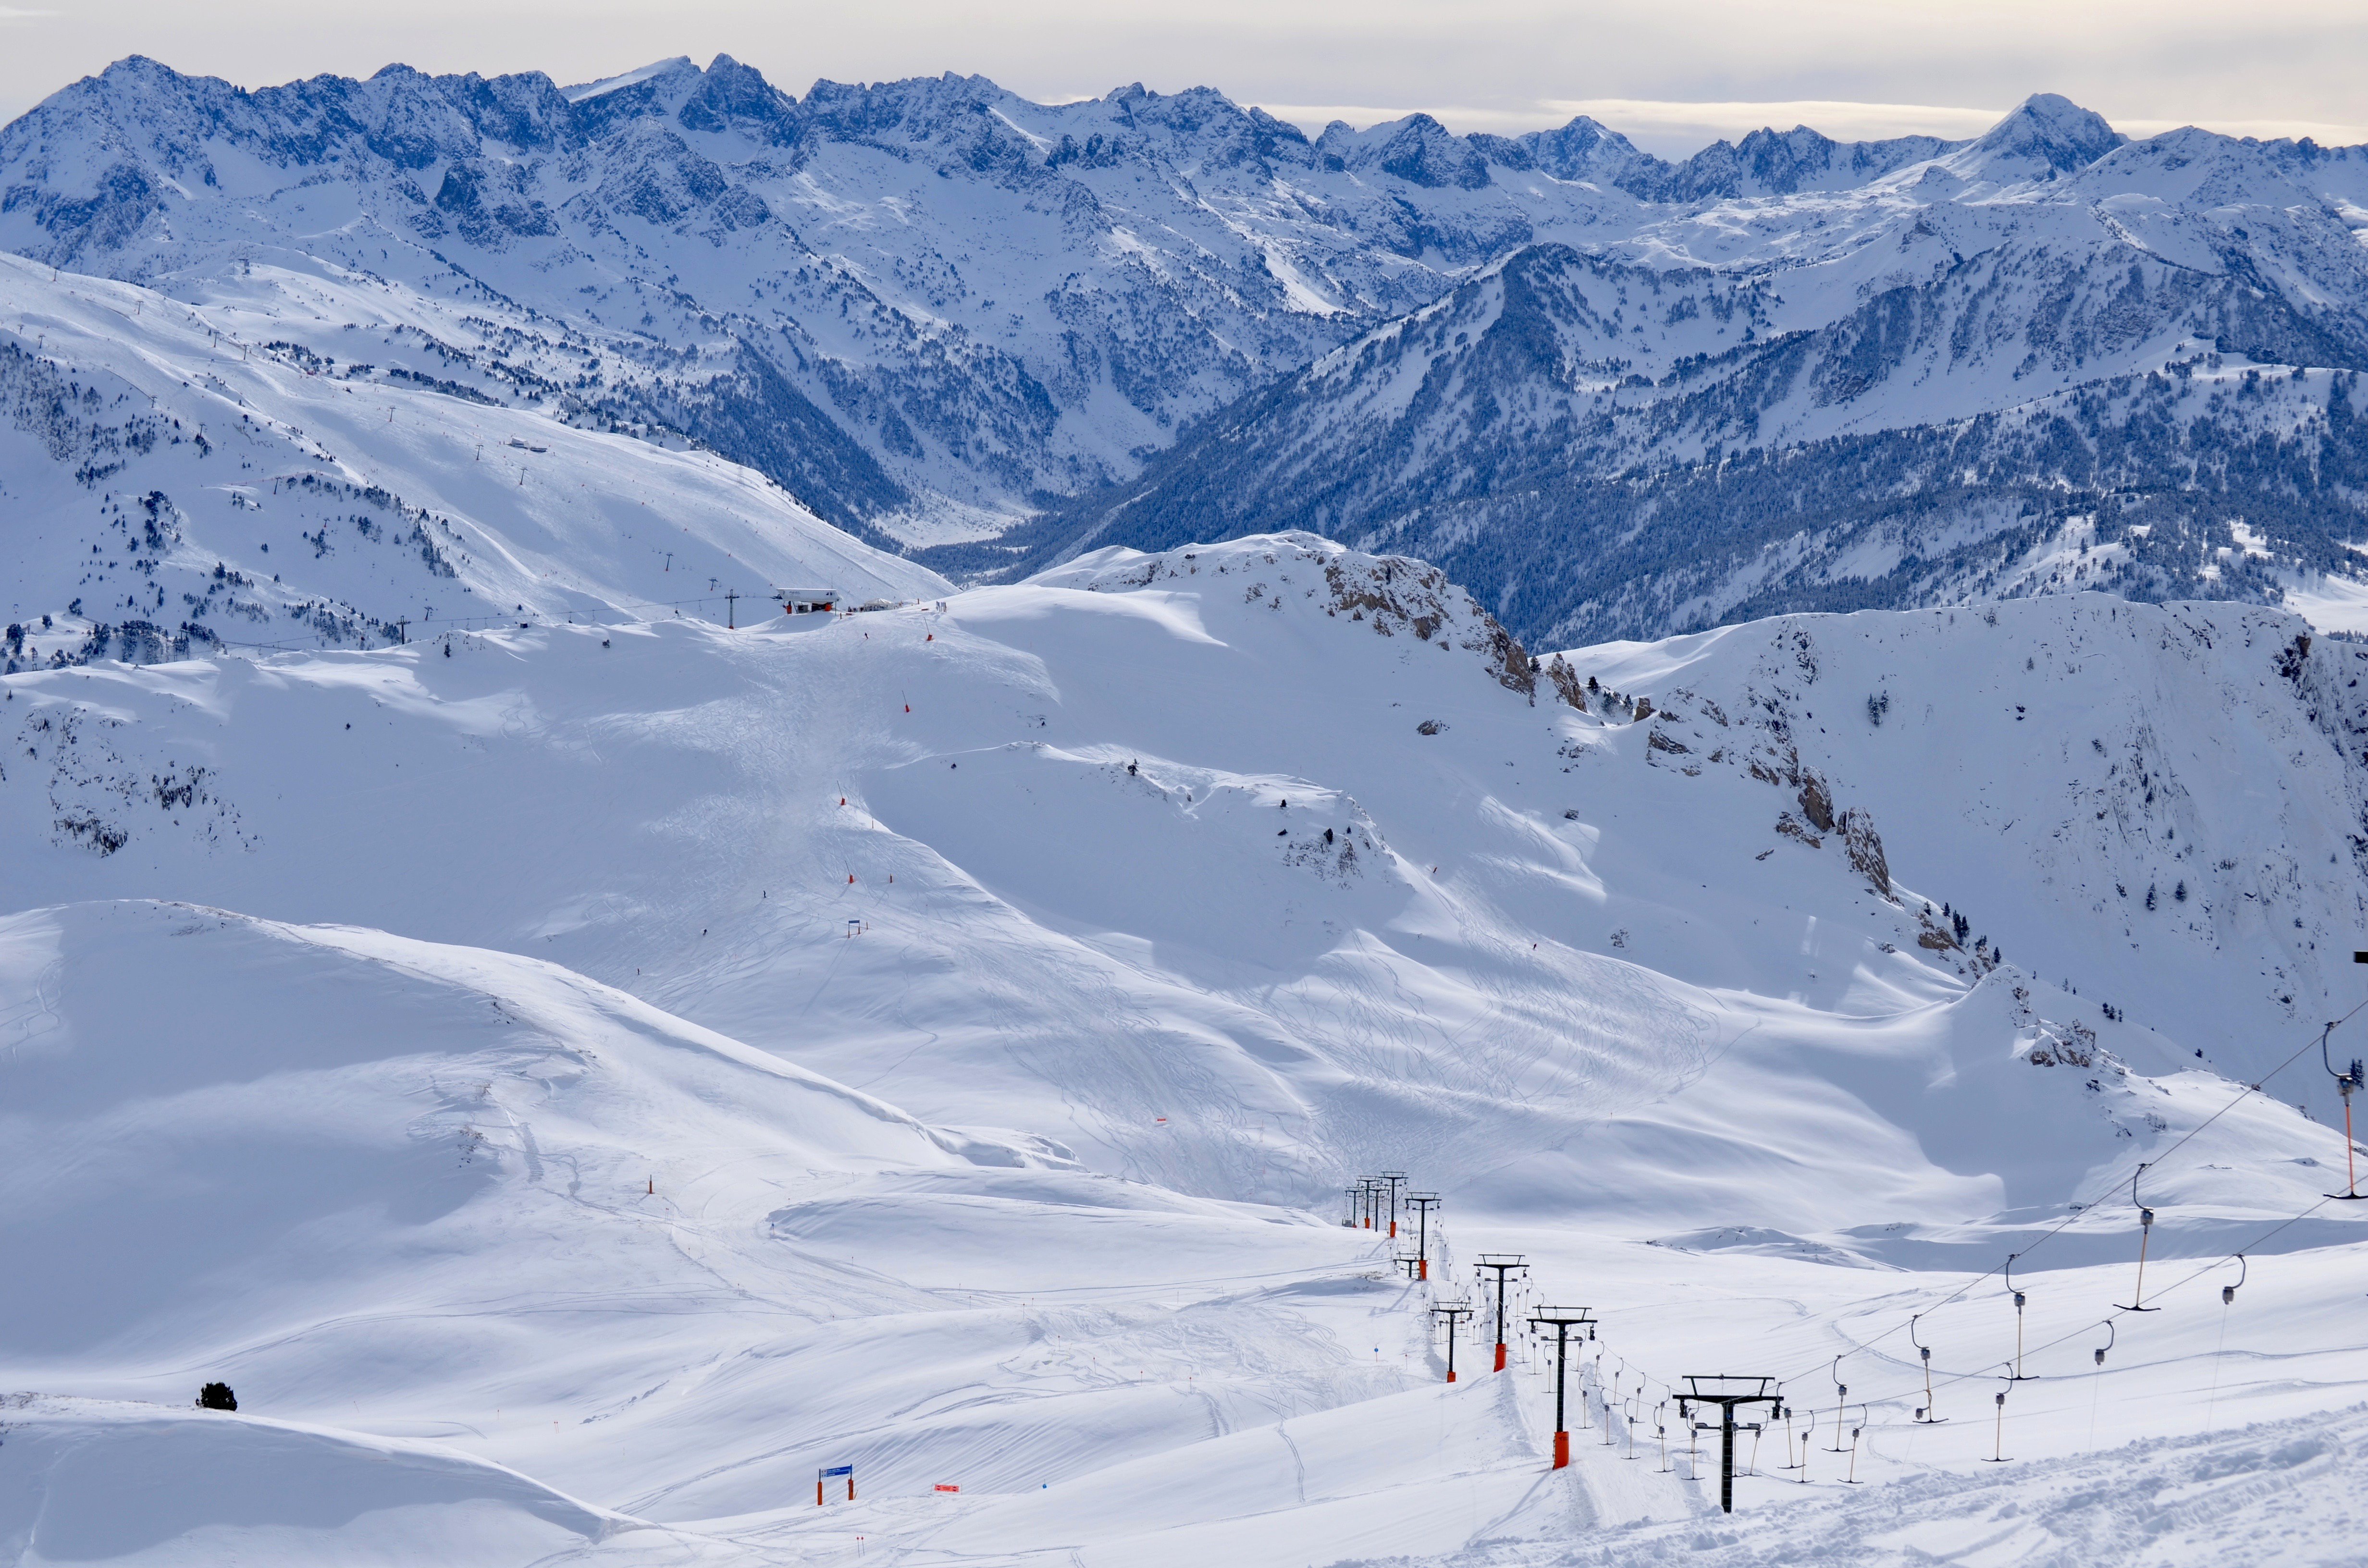 Més pistes i més superfície esquiable a l’estació de Baqueira – Beret